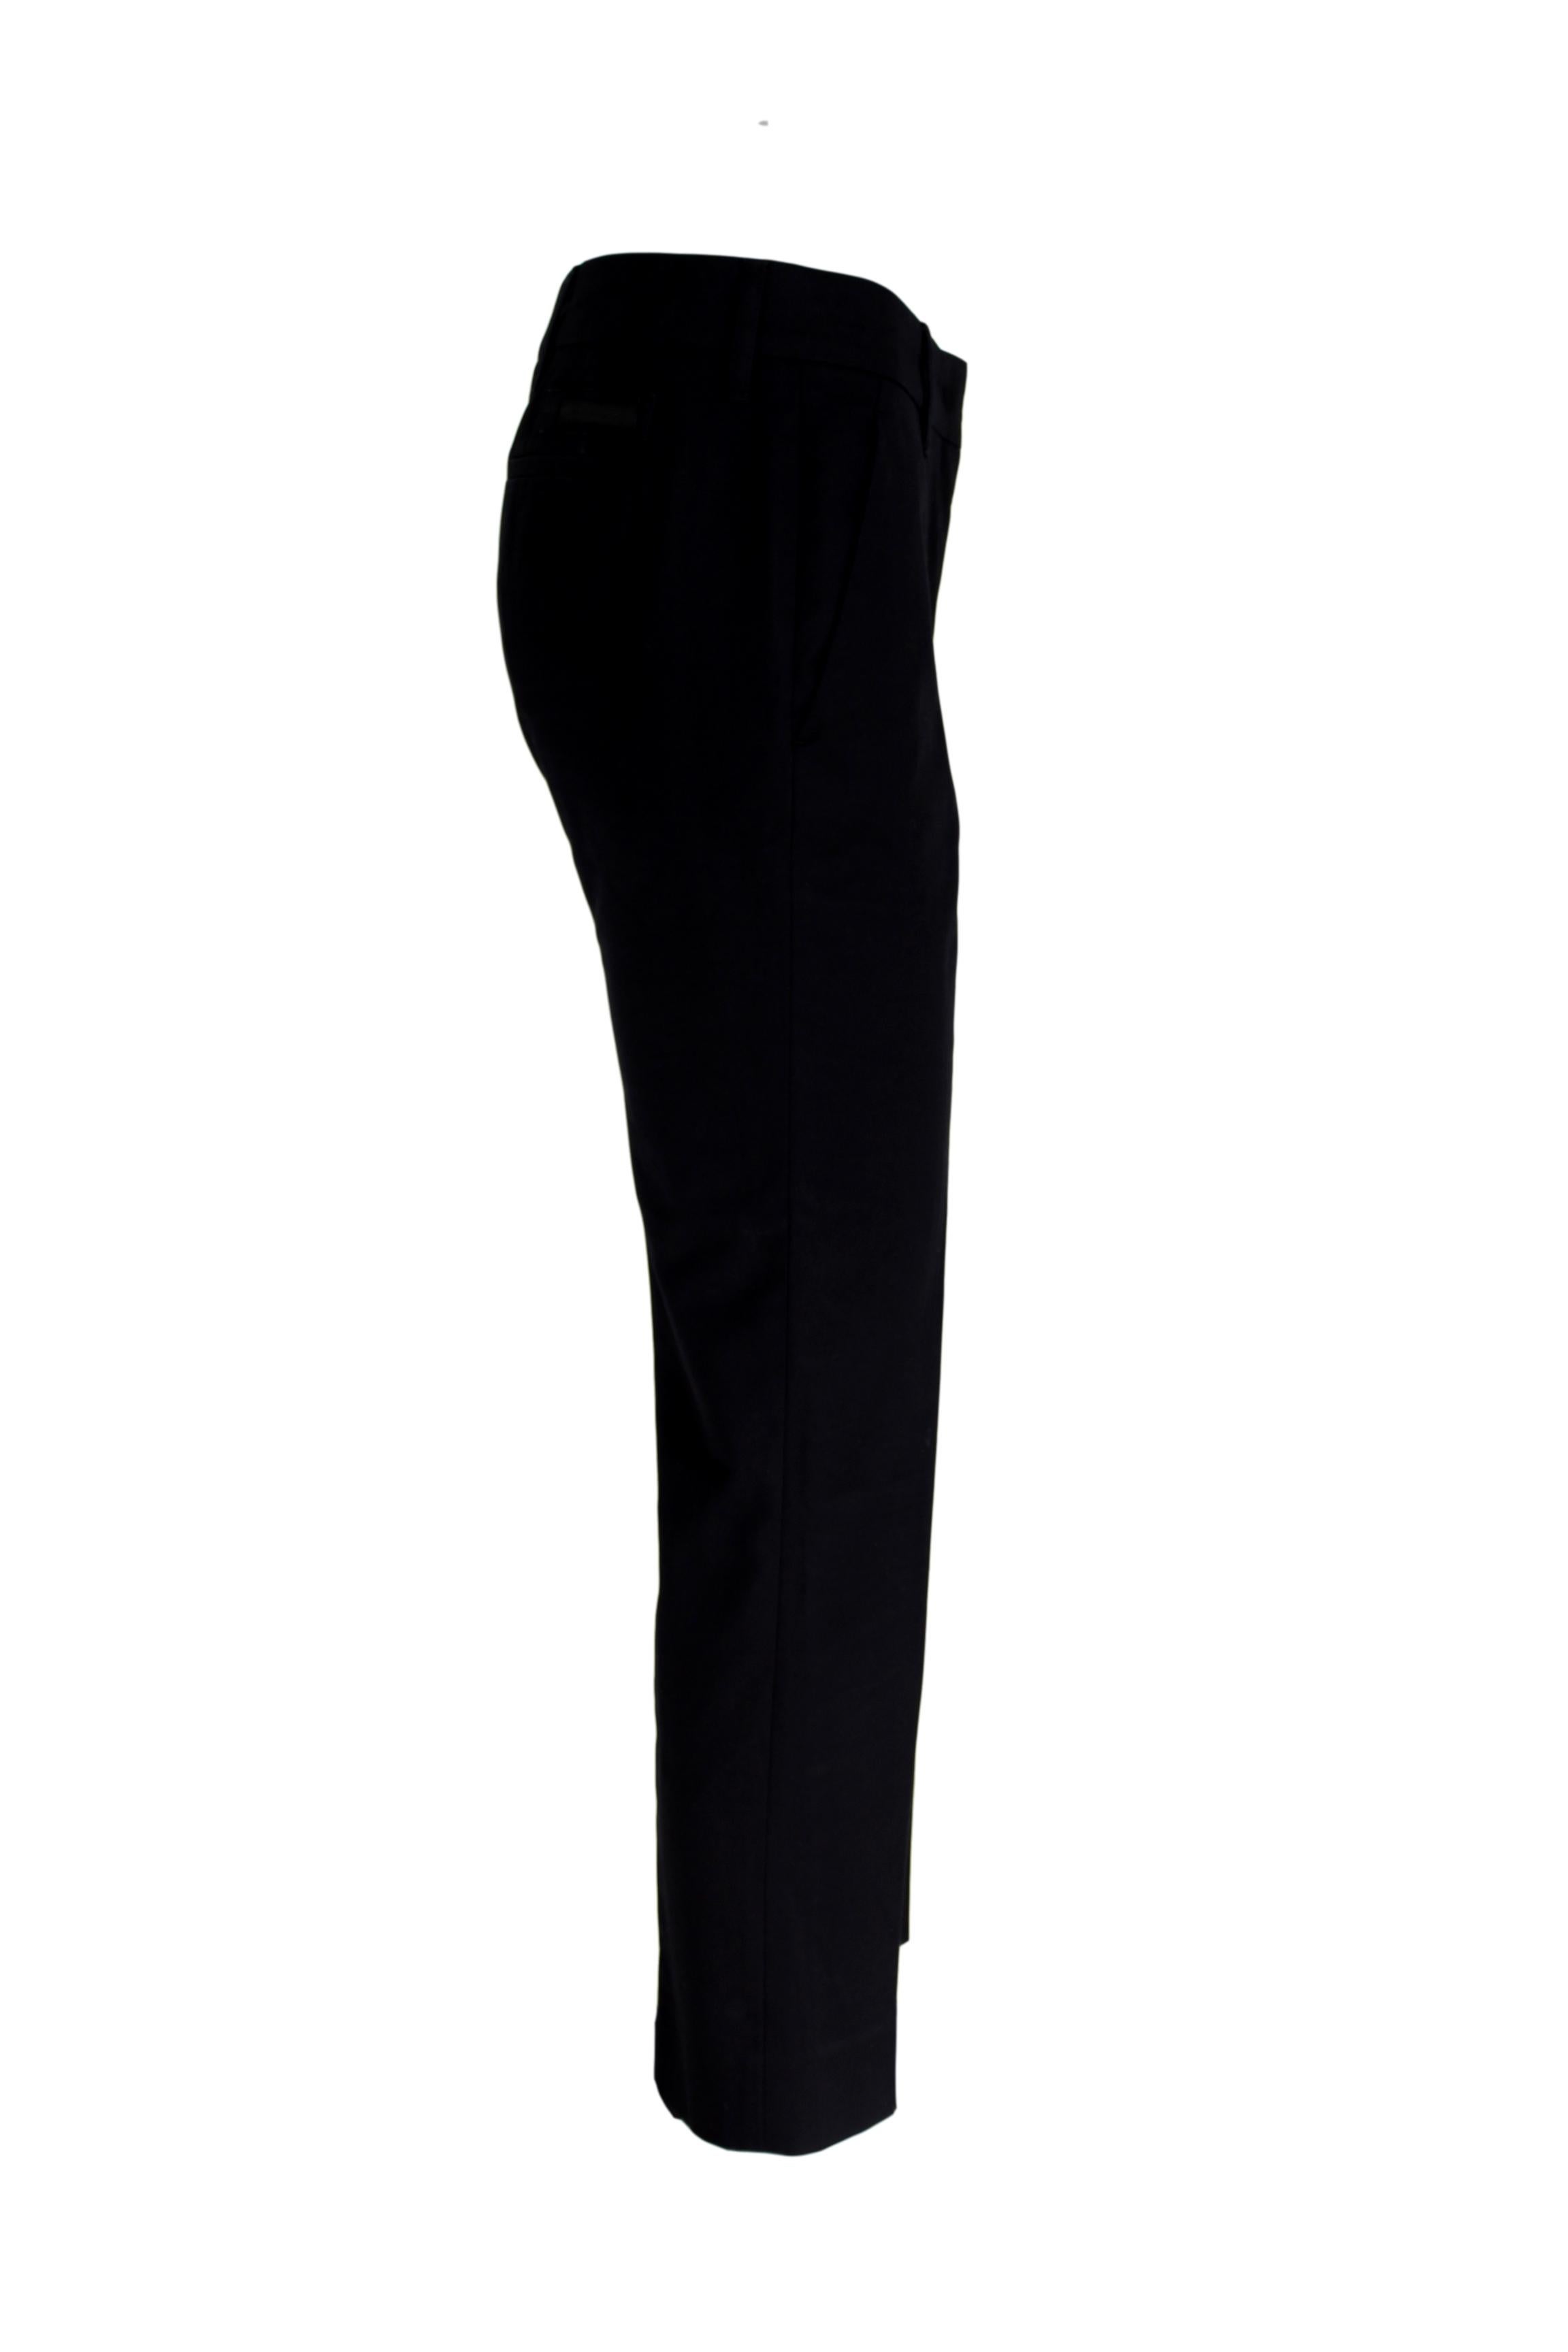 Prada Black Cotton Short Capri Classic Trousers In Excellent Condition In Brindisi, Bt